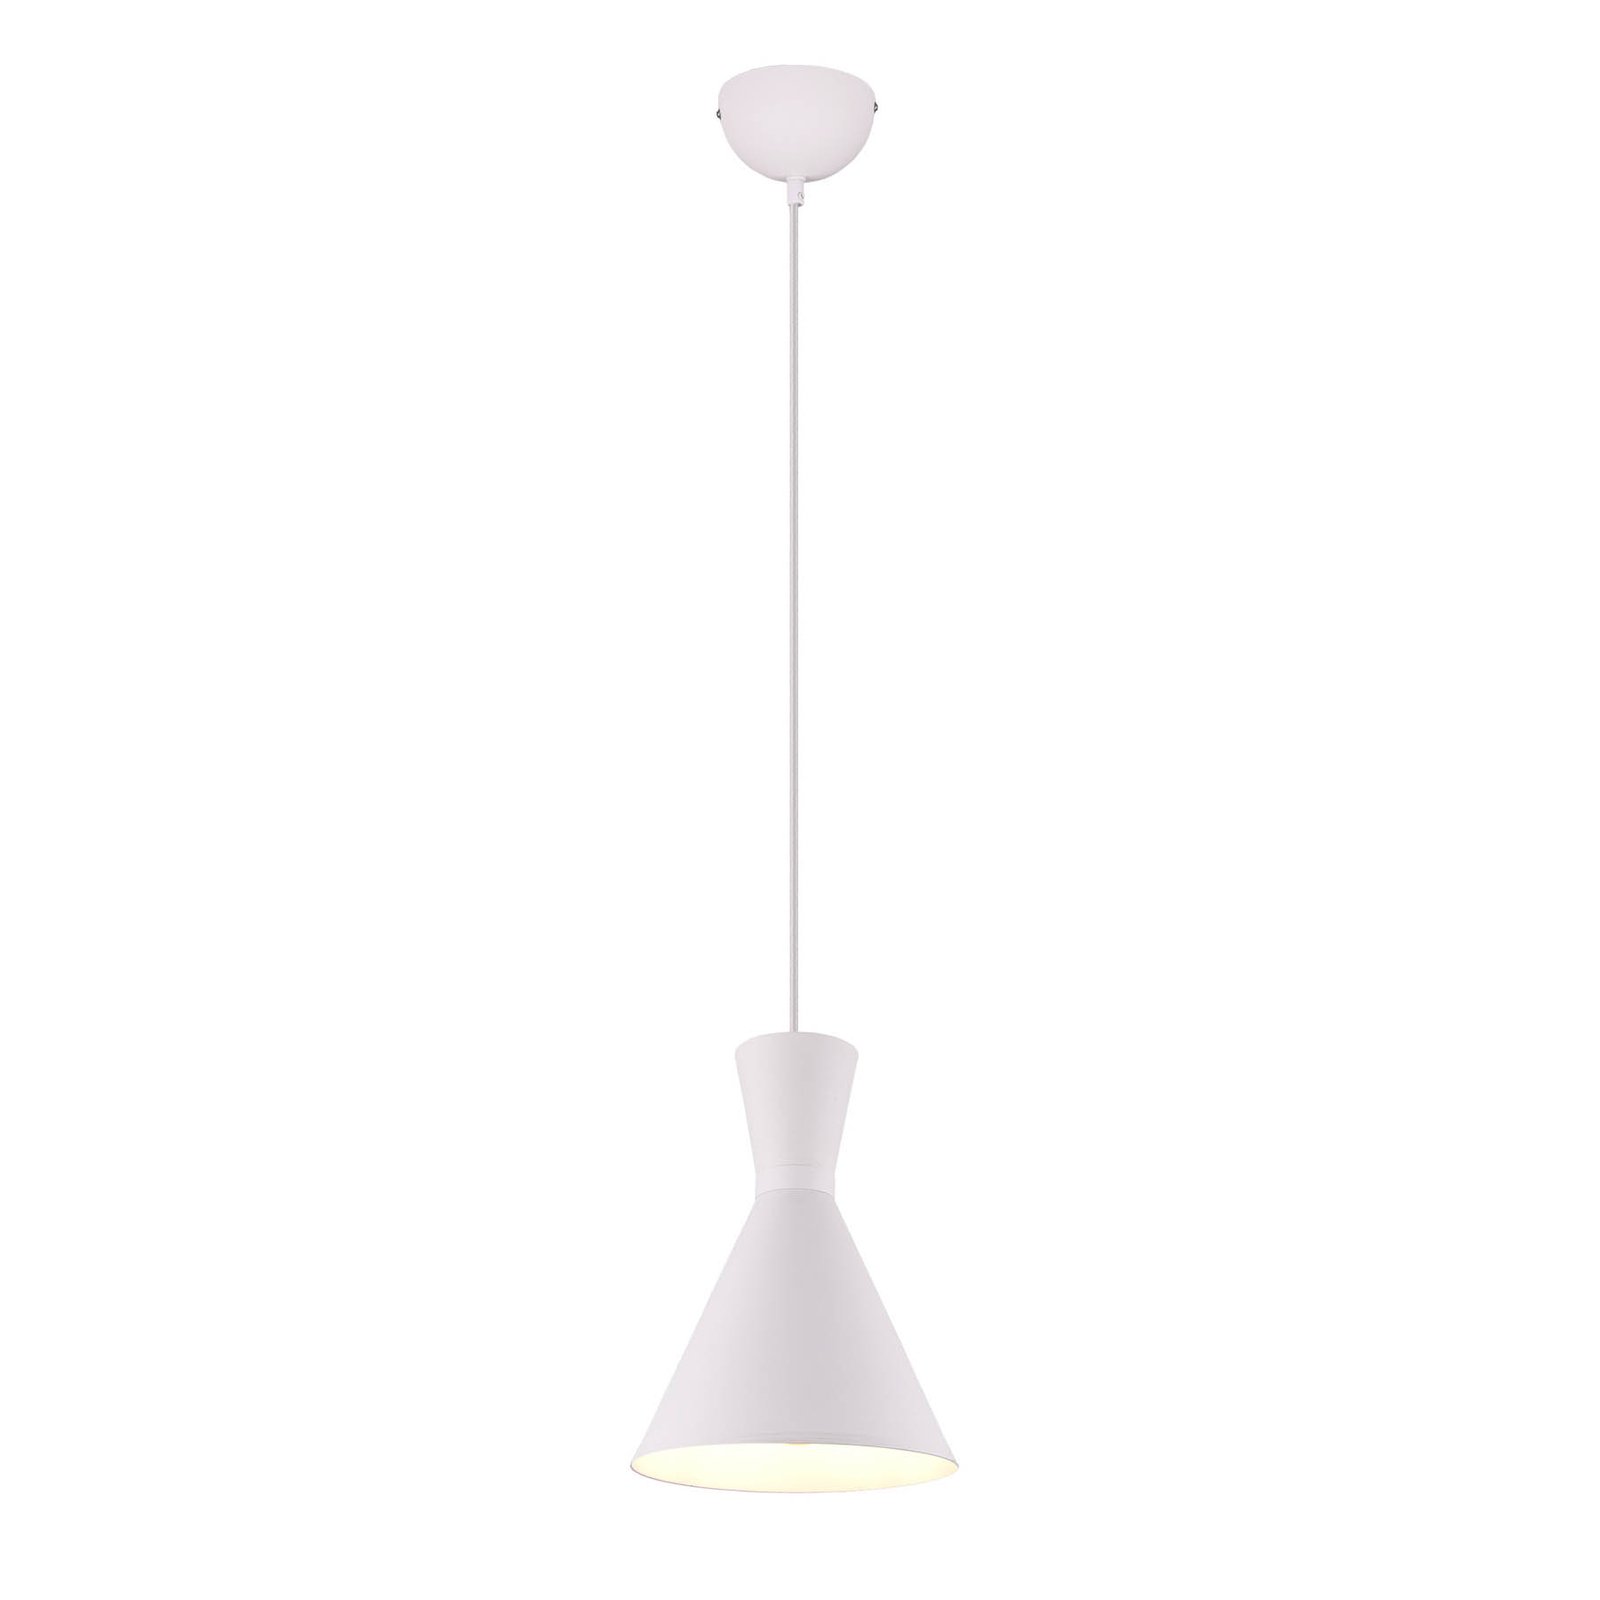 Enzo hængelampe, Ø 20 cm, hvid, 1 lyskilde